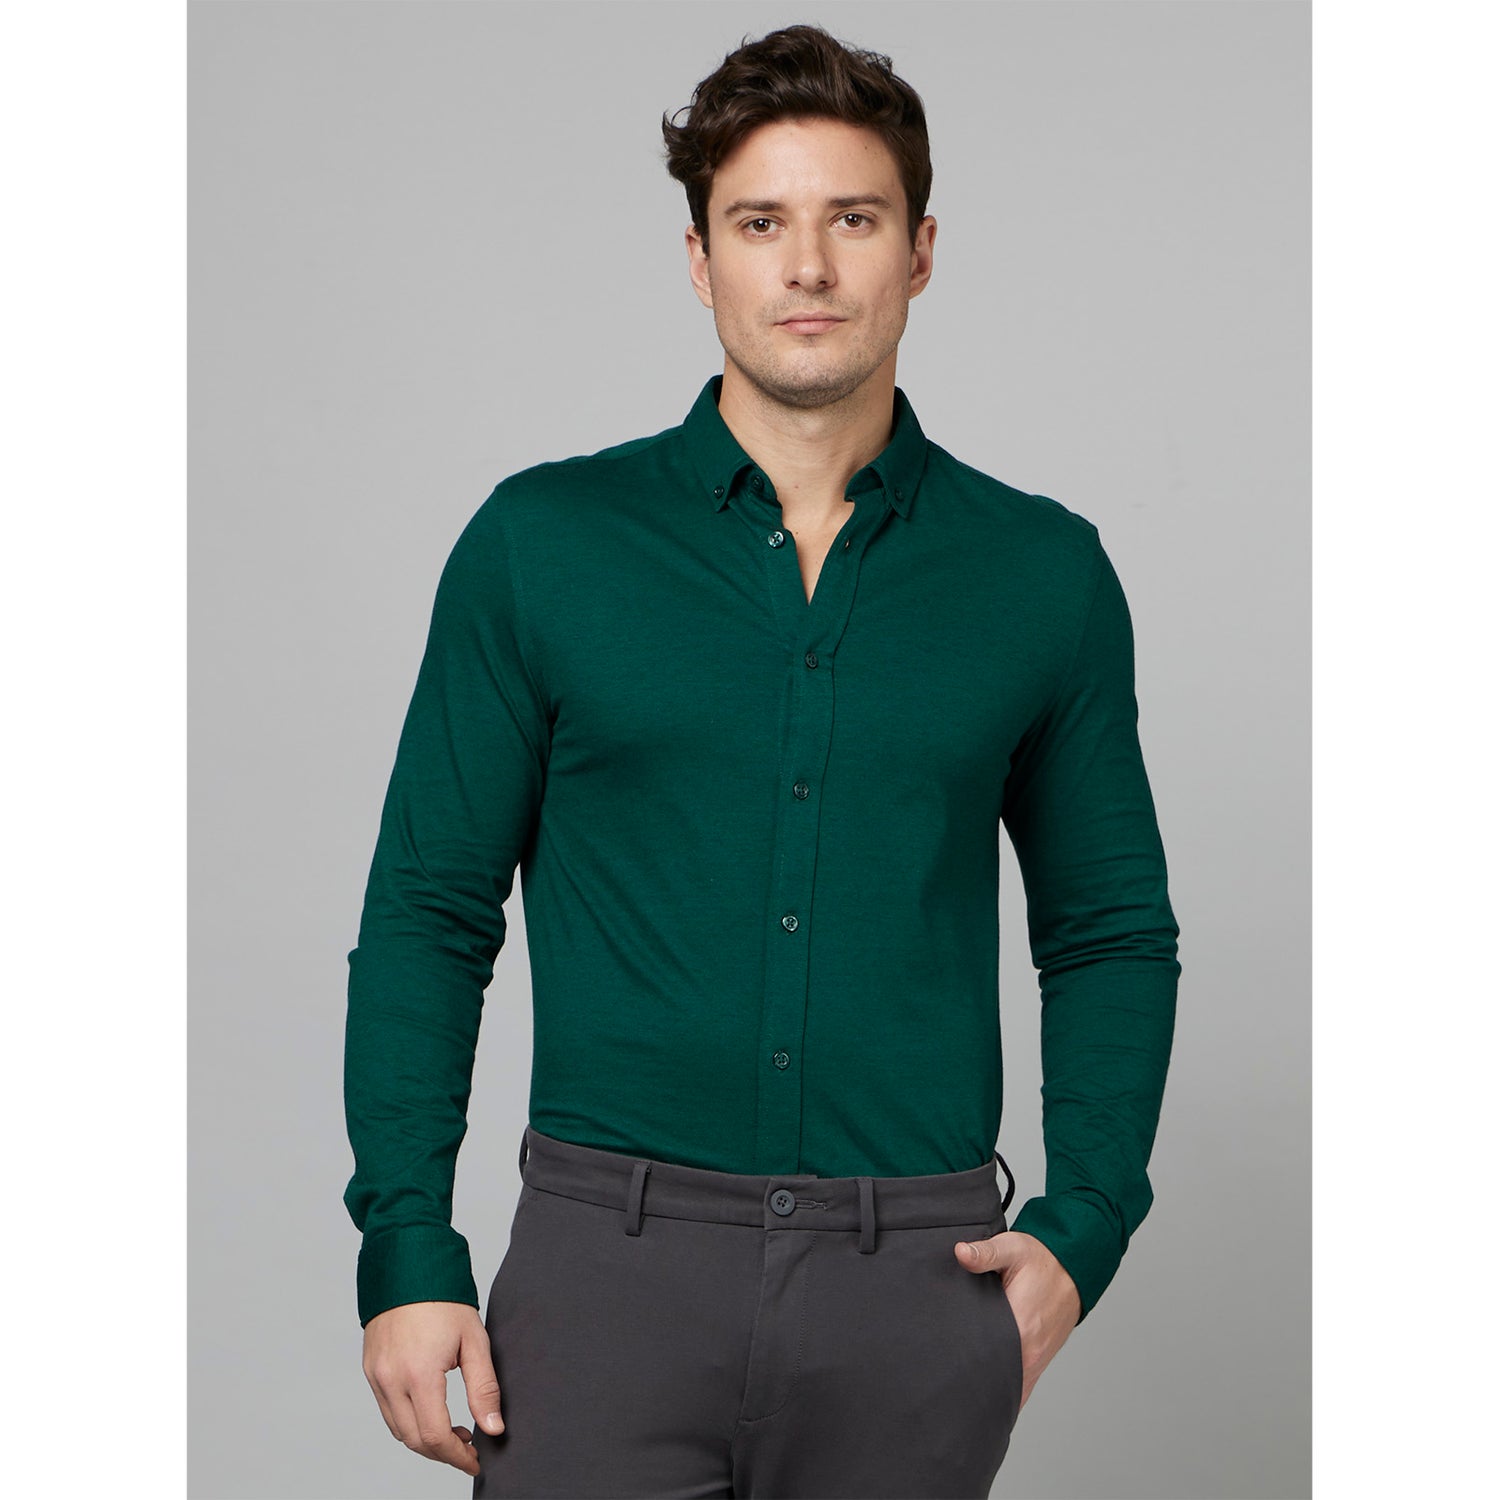 Dark Green Classic Spread Collar Cotton Casual Shirt (DAPIKIN)